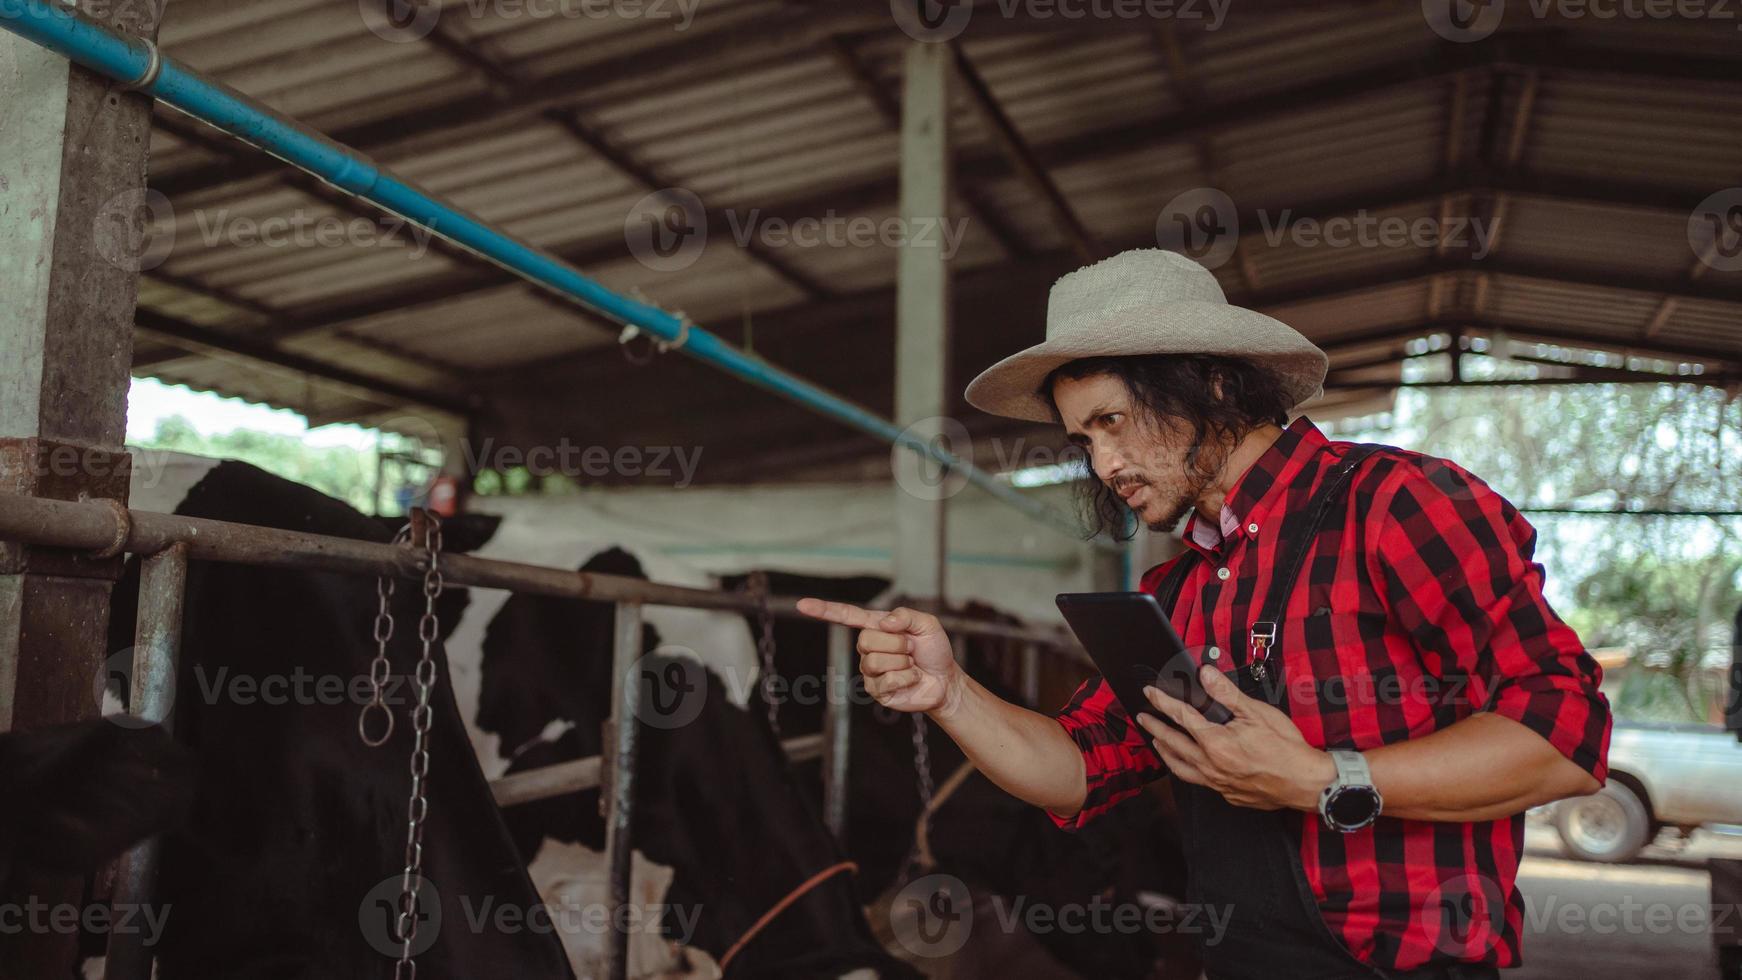 agricoltore maschio che utilizza tablet per controllare il suo bestiame e la qualità del latte nell'azienda lattiero-casearia. industria agricola, concetto di allevamento e allevamento di animali, mucca in azienda lattiero-casearia che mangia fieno, stalla. foto